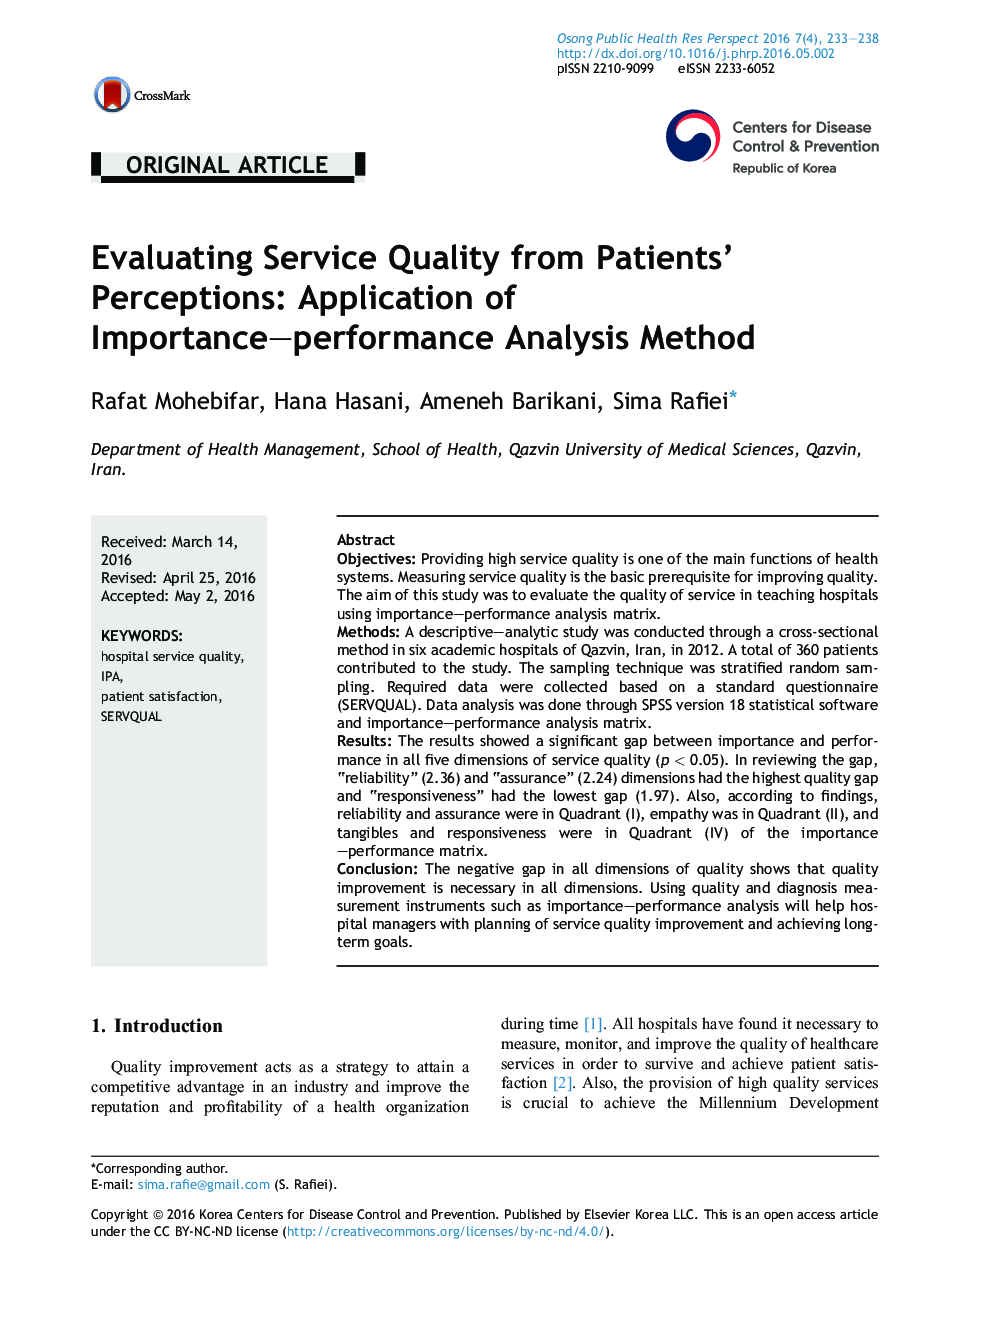 ارزیابی کیفیت خدمات از ادراکات بیماران: استفاده از روش تجزیه و تحلیل اهمیت ـ عملکرد